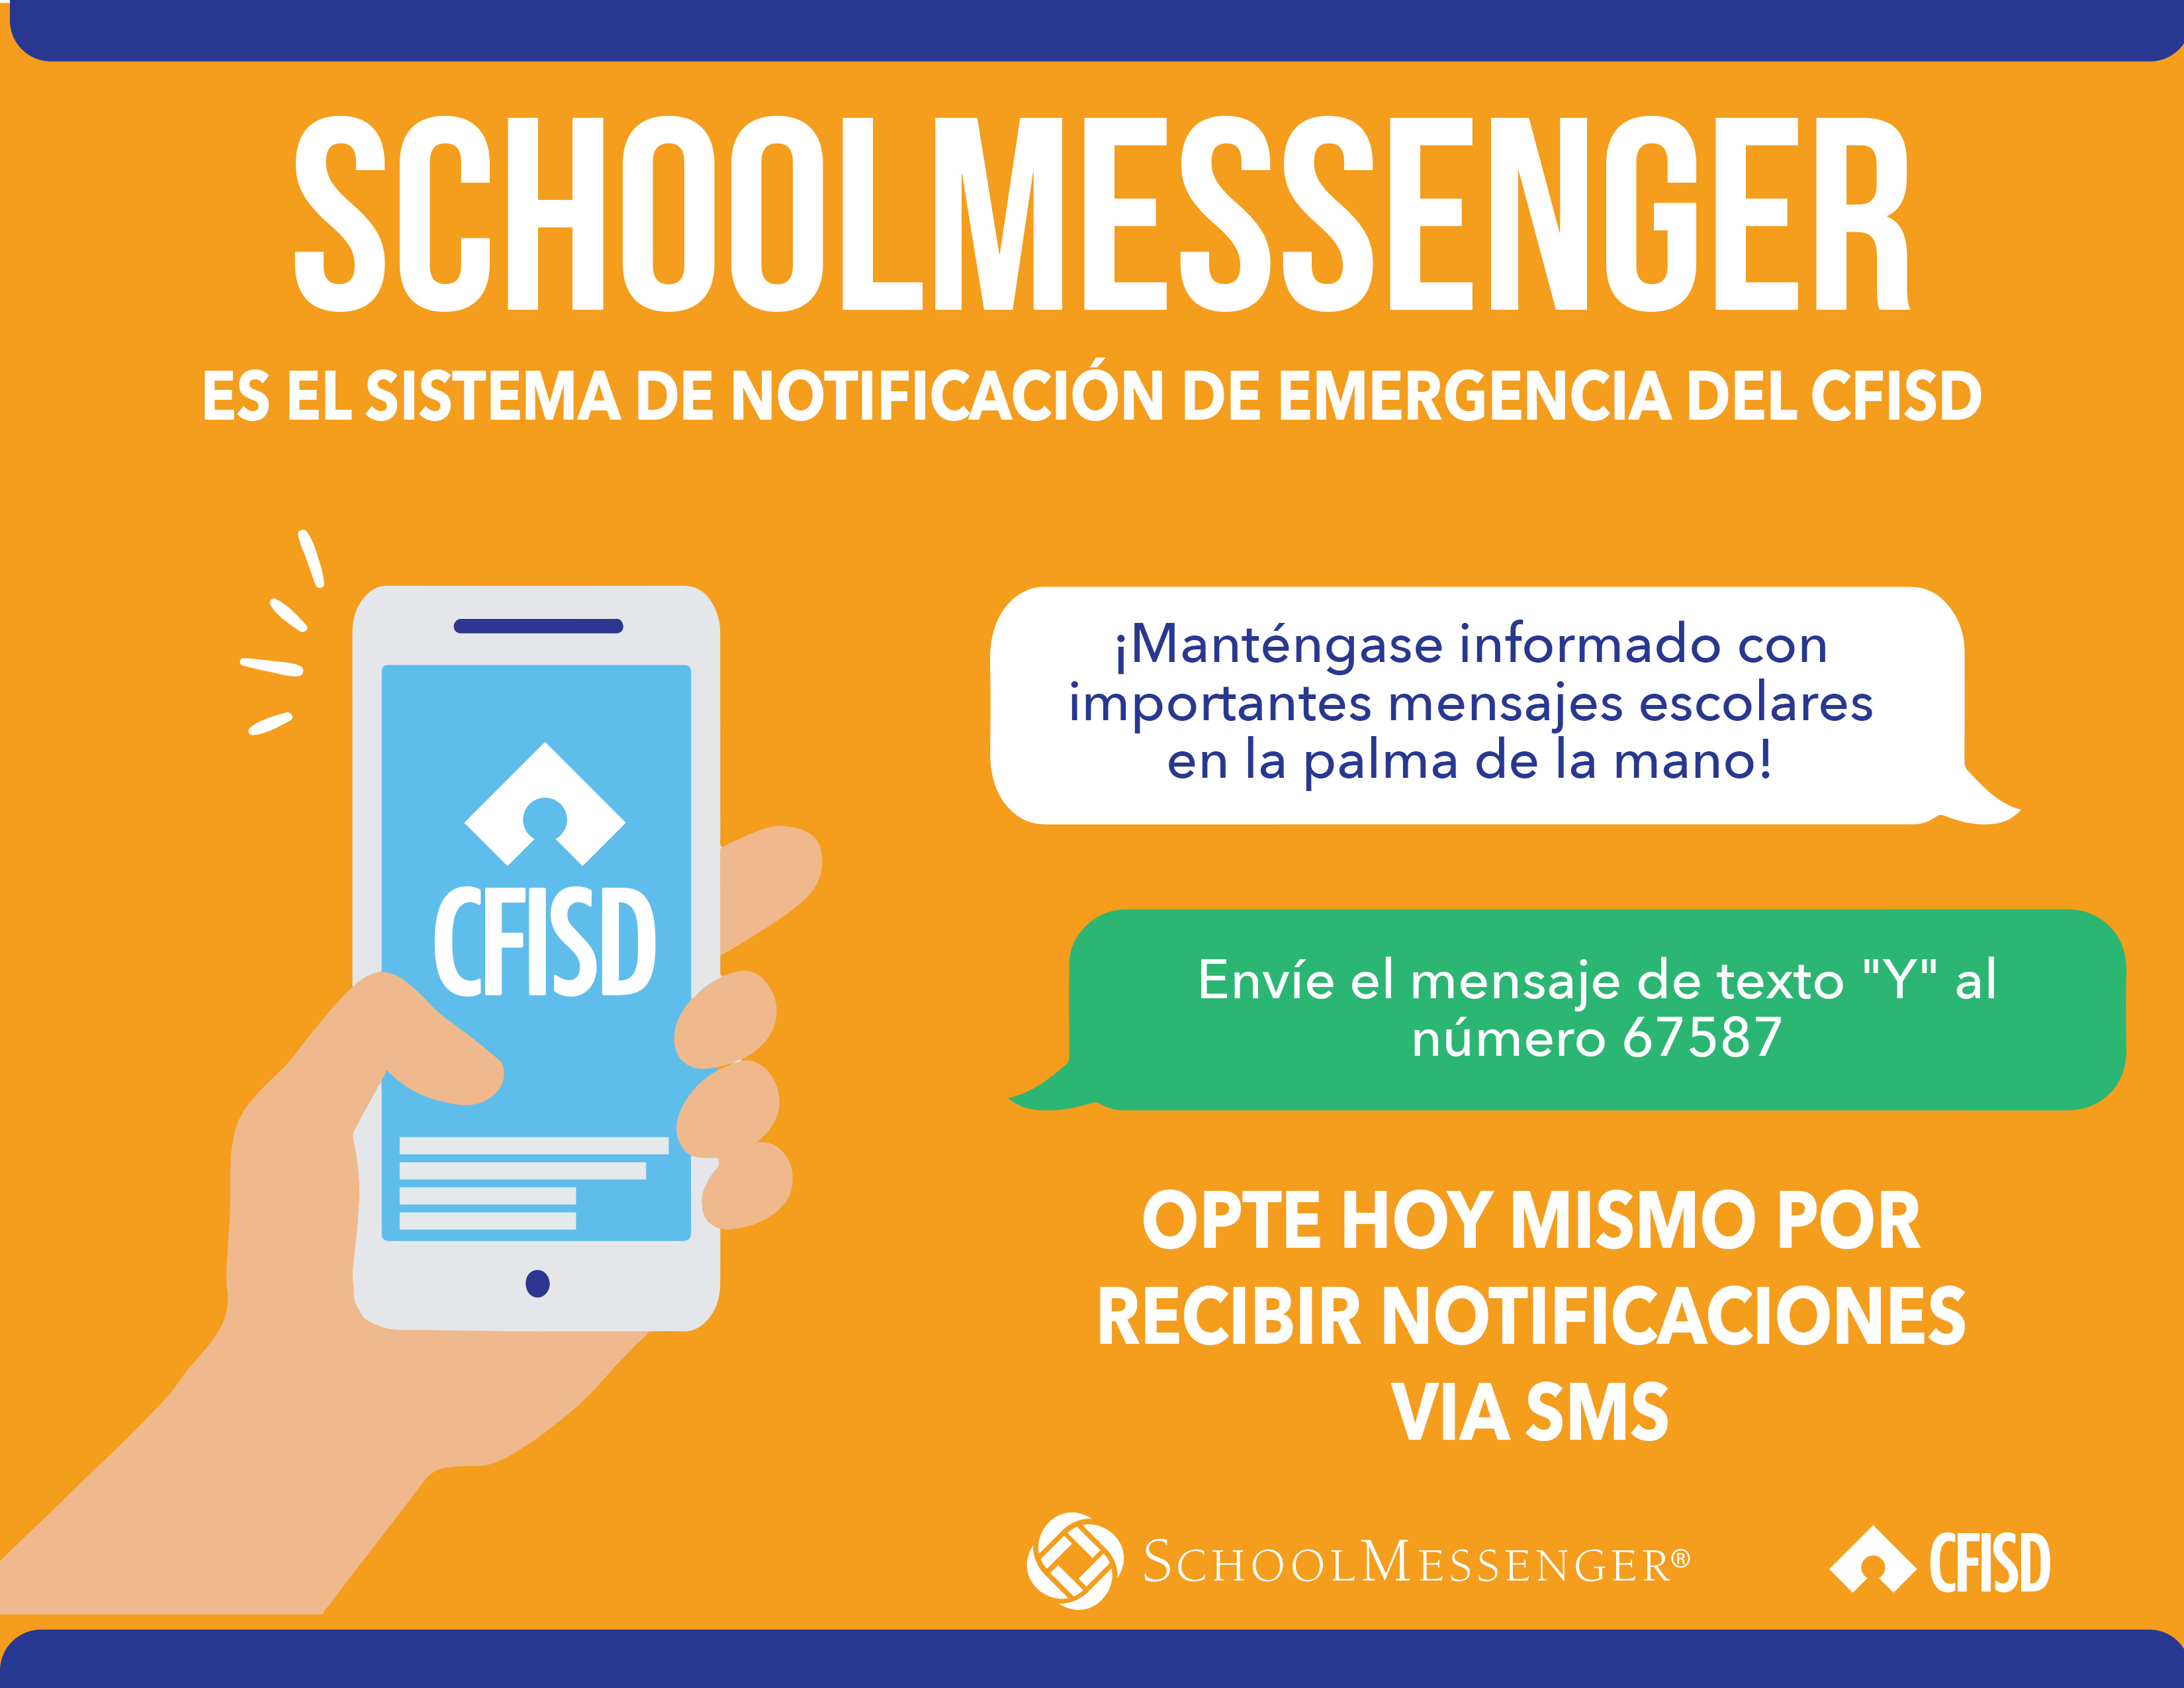 School Messenger es el sistema de notification de emergencia de CFISD